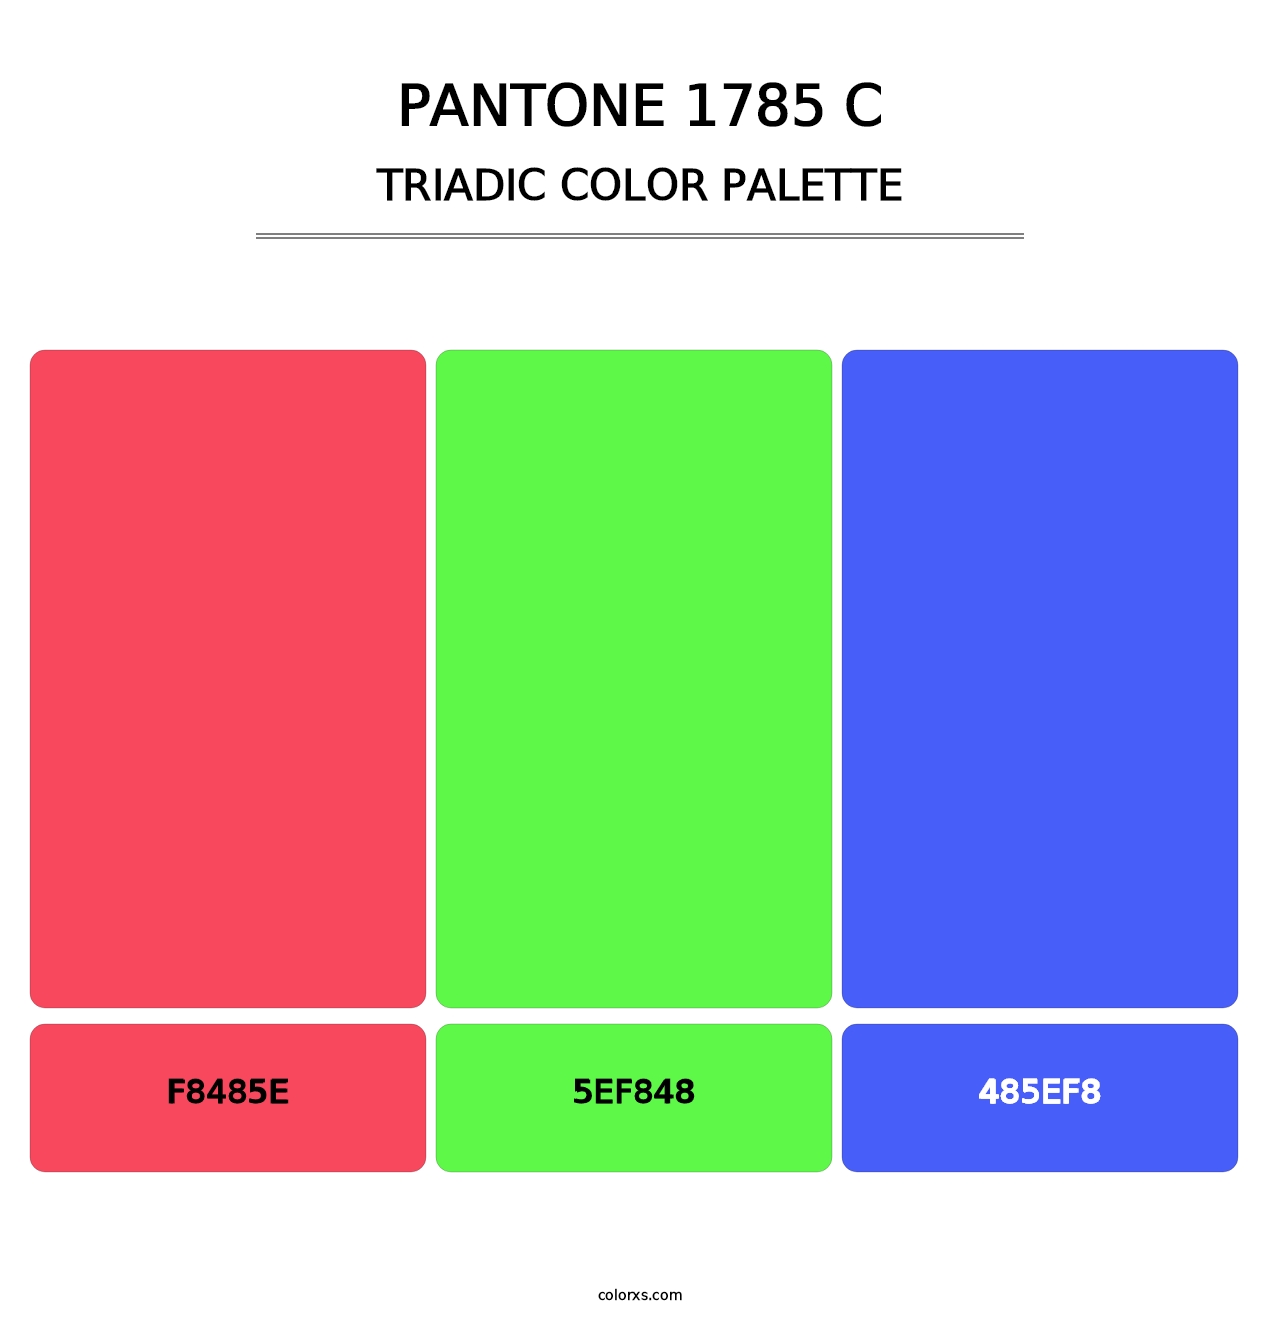 PANTONE 1785 C - Triadic Color Palette